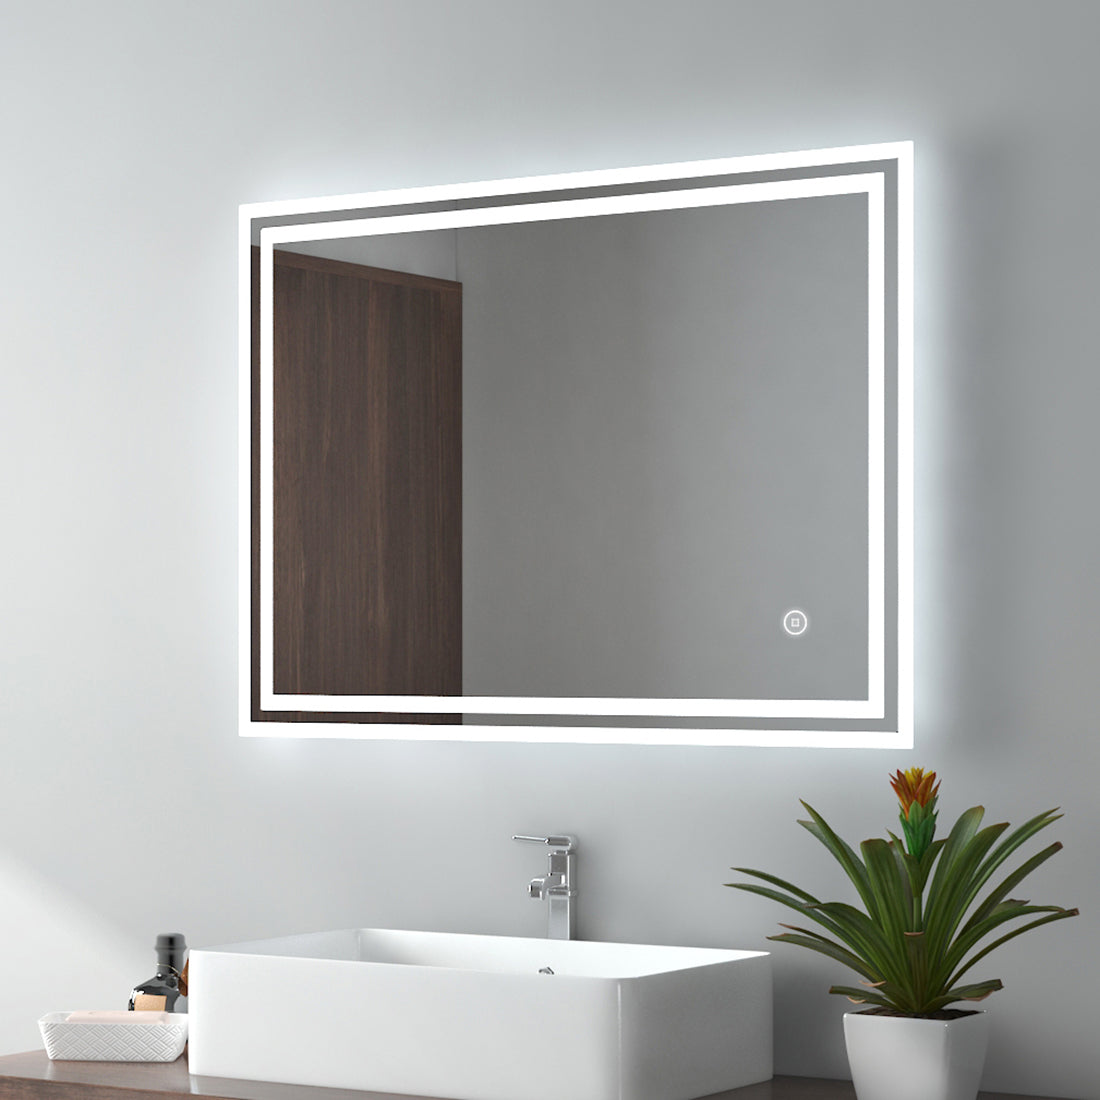 EMKE Badzimmerspiegel LED mit Touchschalter , Warmweiß – Kaltweiß – Neutral , Beschlagfrei , 60 x 80 cm